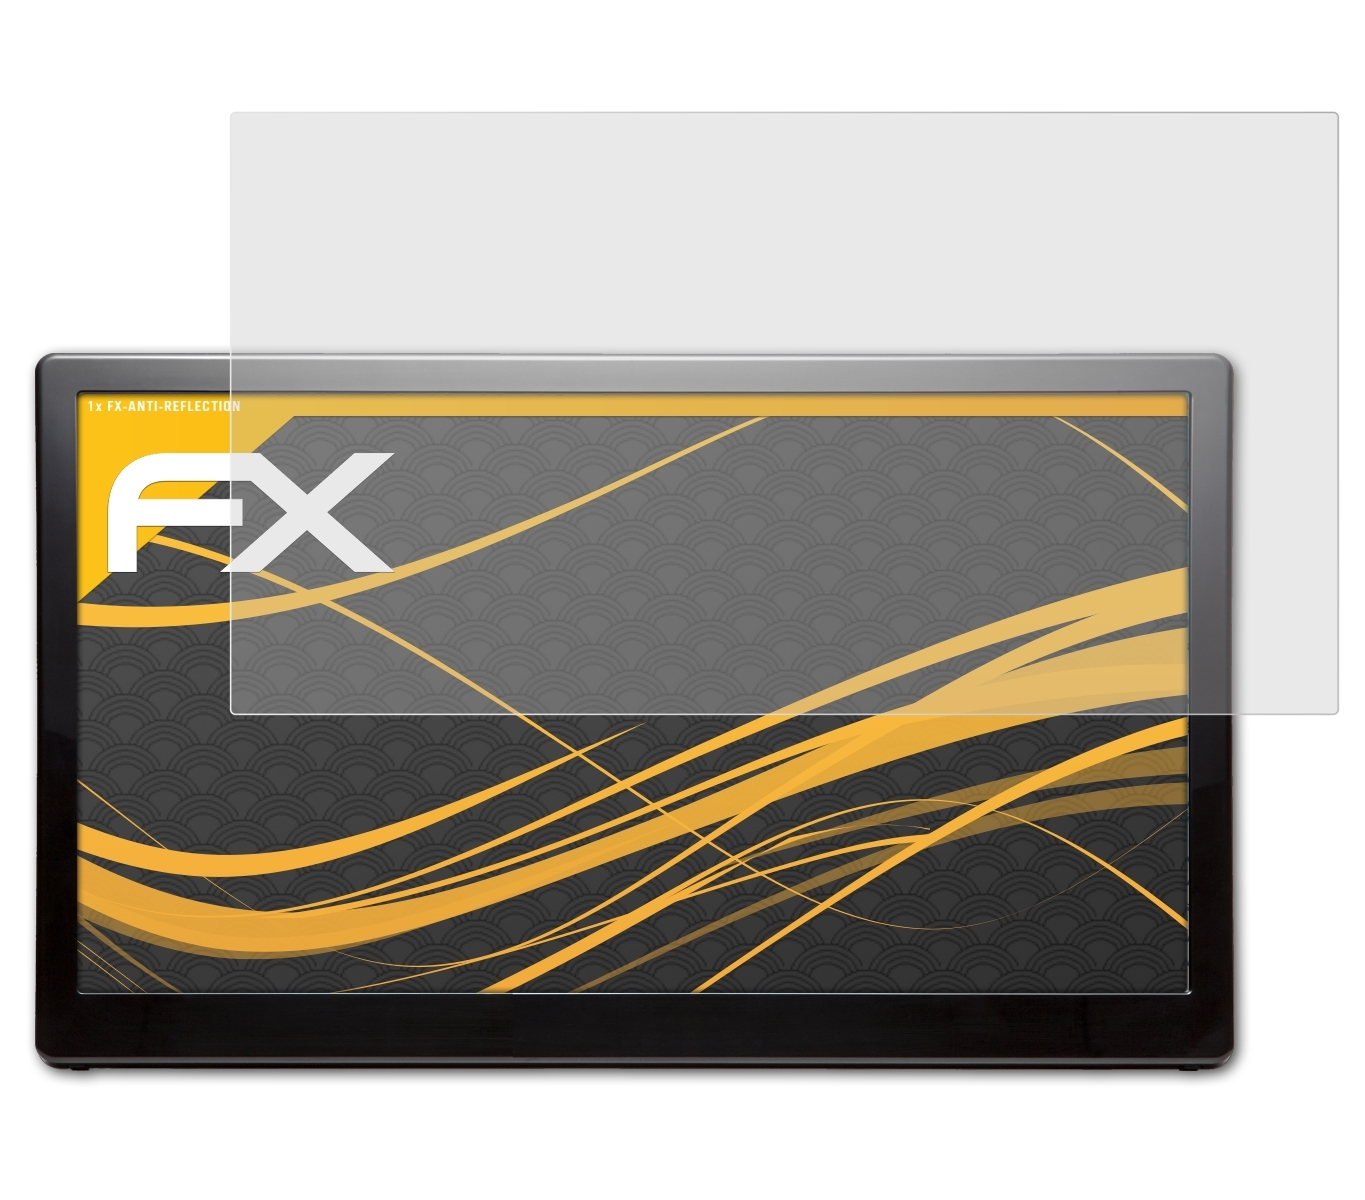 ATFOLIX FX-Antireflex Displayschutz(für AOC E1659FWU)